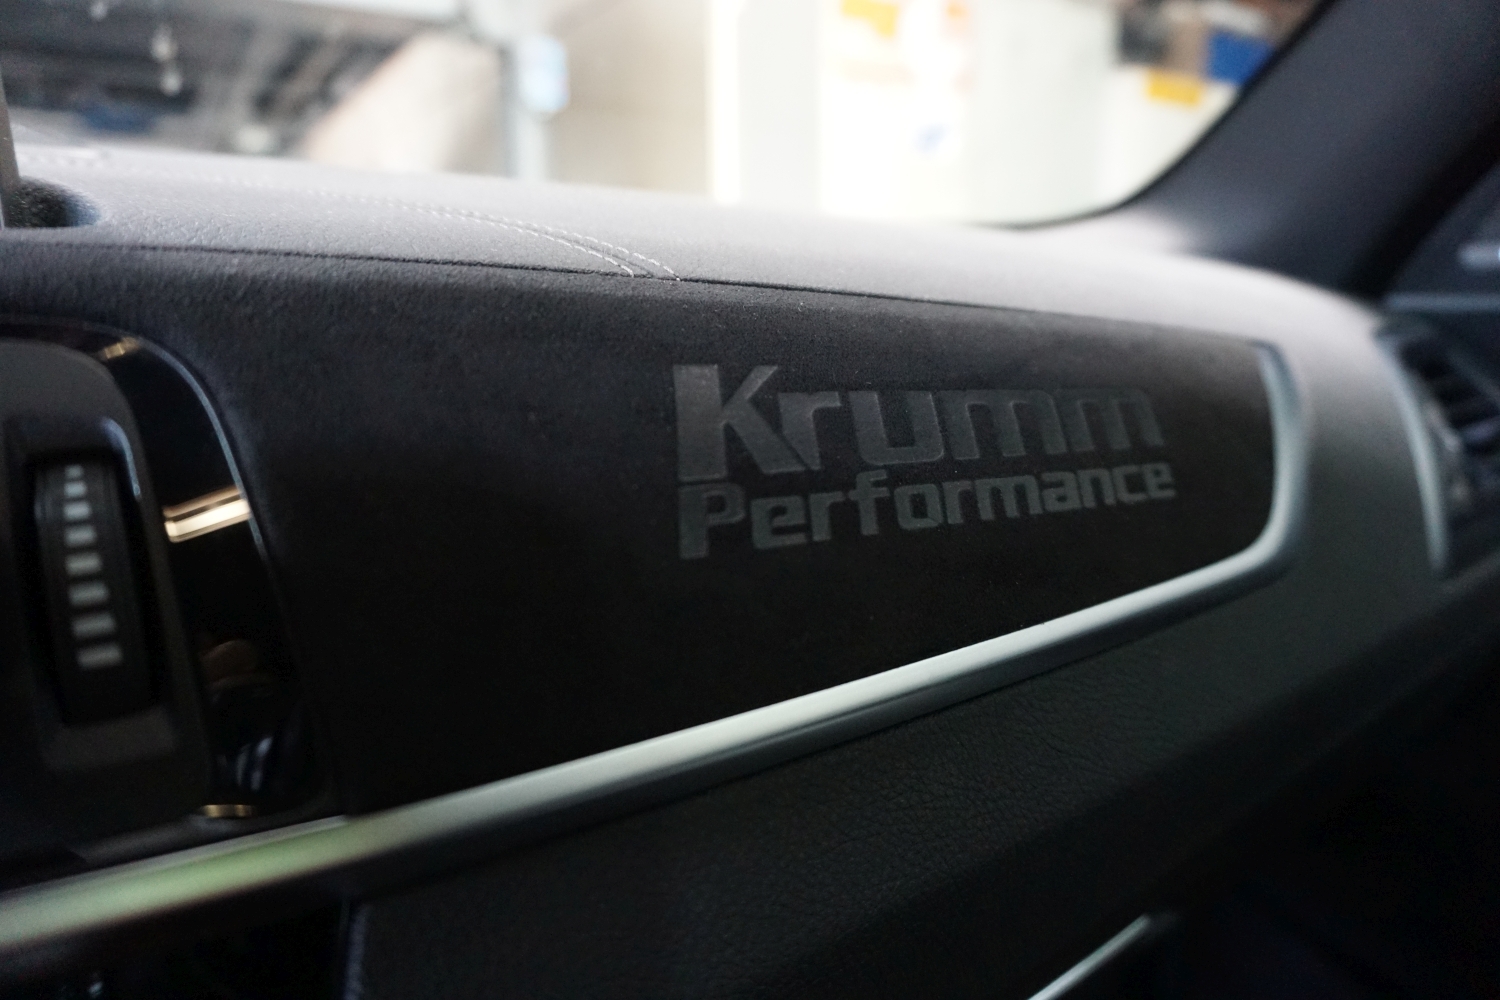 Krumm-Performance Alcantara Interieur Upgrade BMW, Vorabeinsendung, Ja